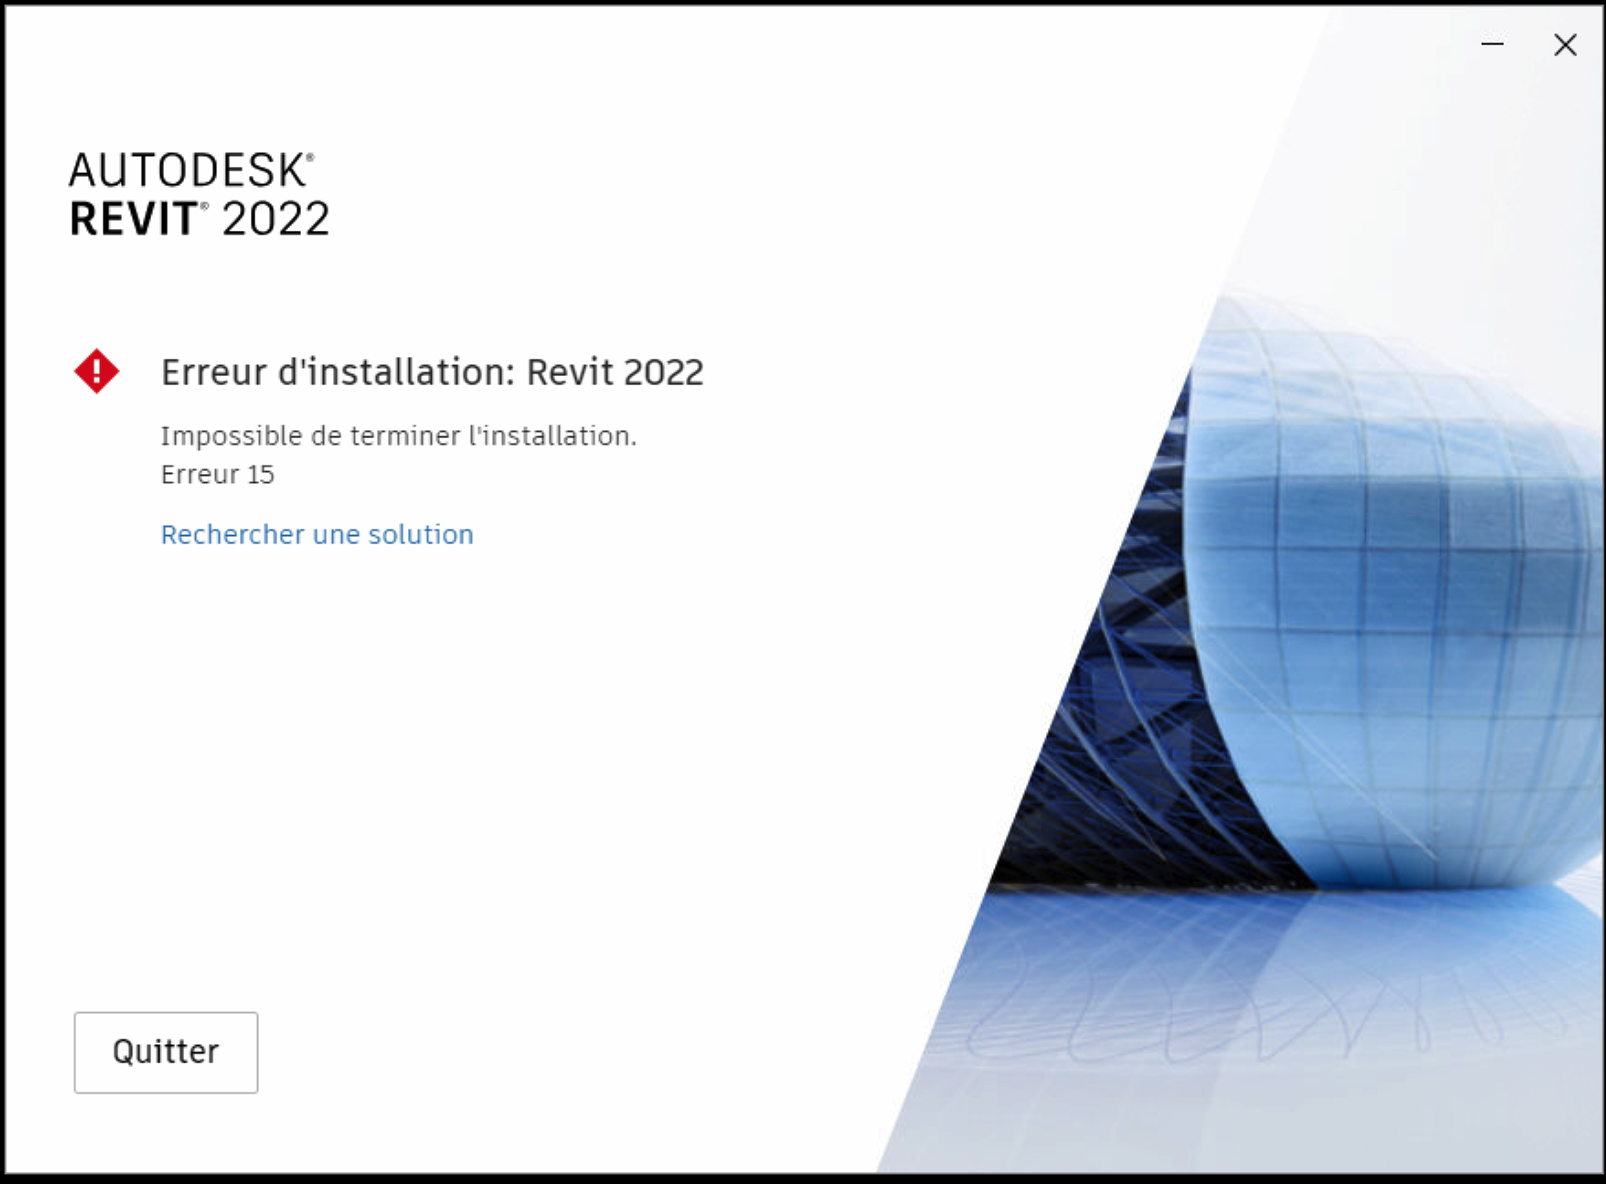 “Install error Revit 2022 The installation couldn’t finish. Error 15